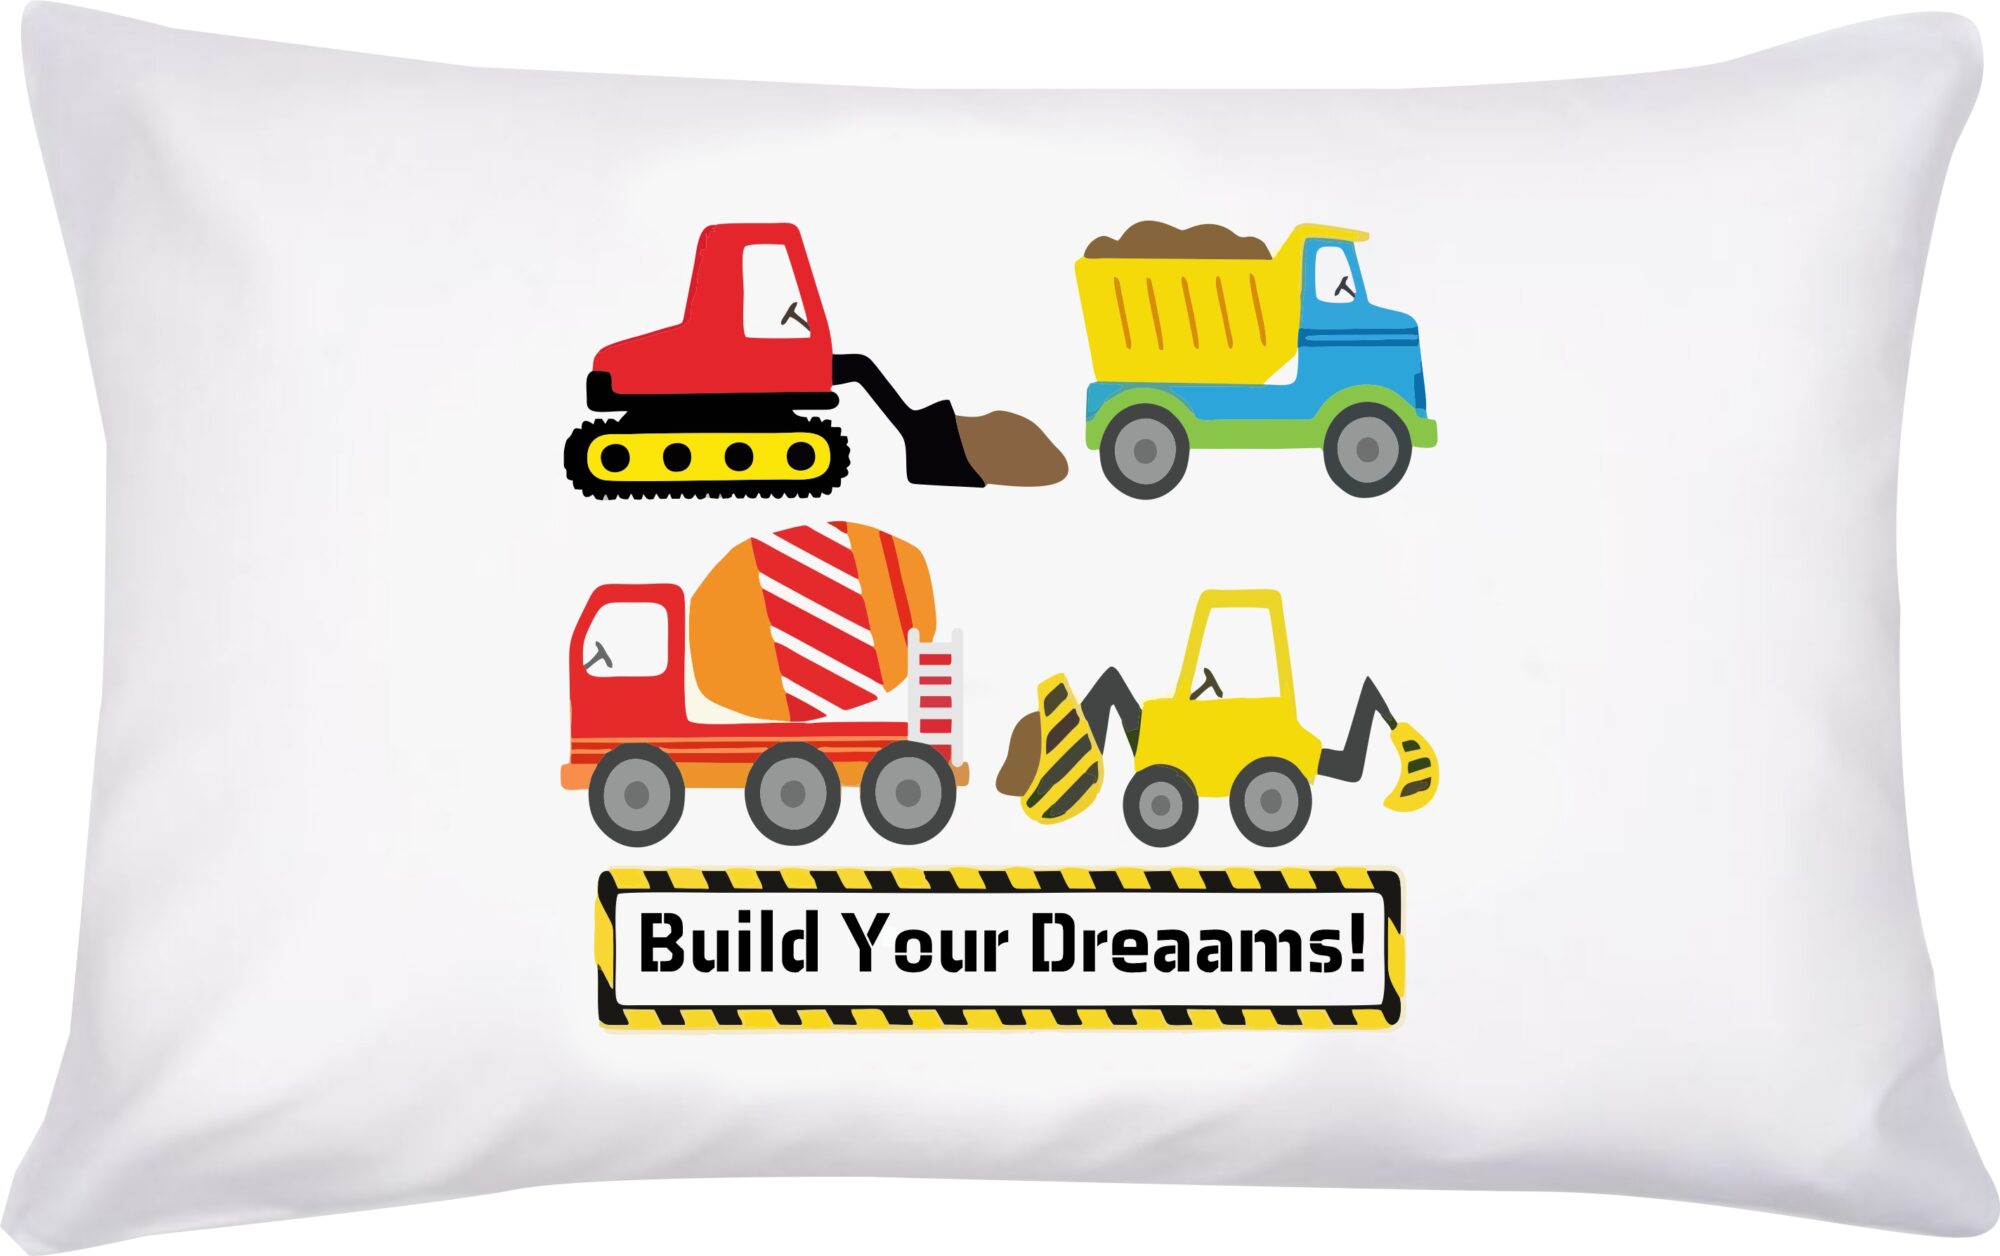 Pikkaboo Pillowcase Cover for Kids - Trucks